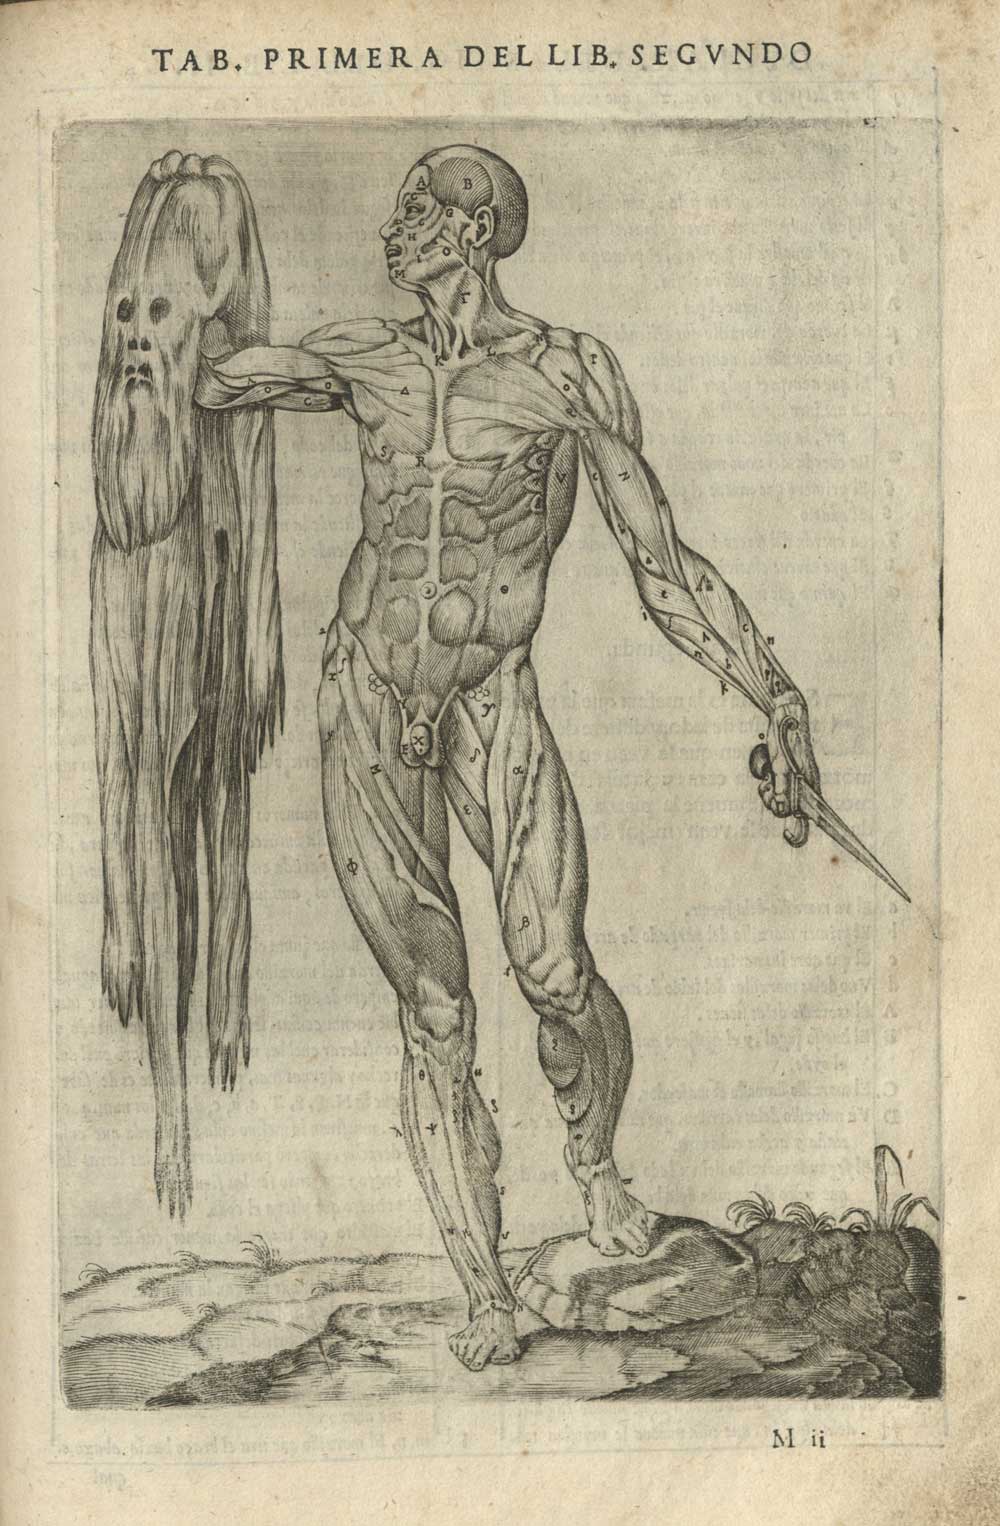 Engraving from Historia de la composicion del cuerpo humano. Juan de Valderde, 1556.